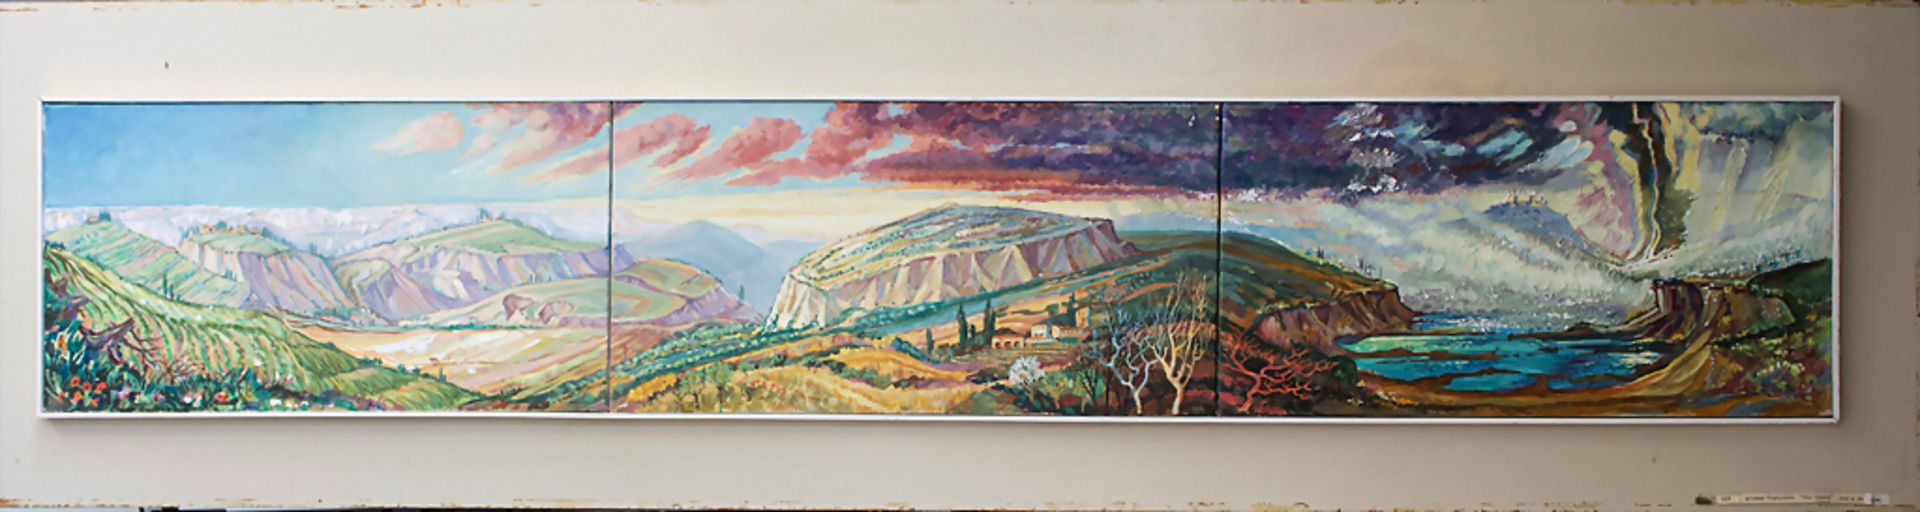 Hardy Schneider-Sato (1919-2002), Triptychon 'Die Crete' / A triptych 'The Crete'Techn - Bild 2 aus 8